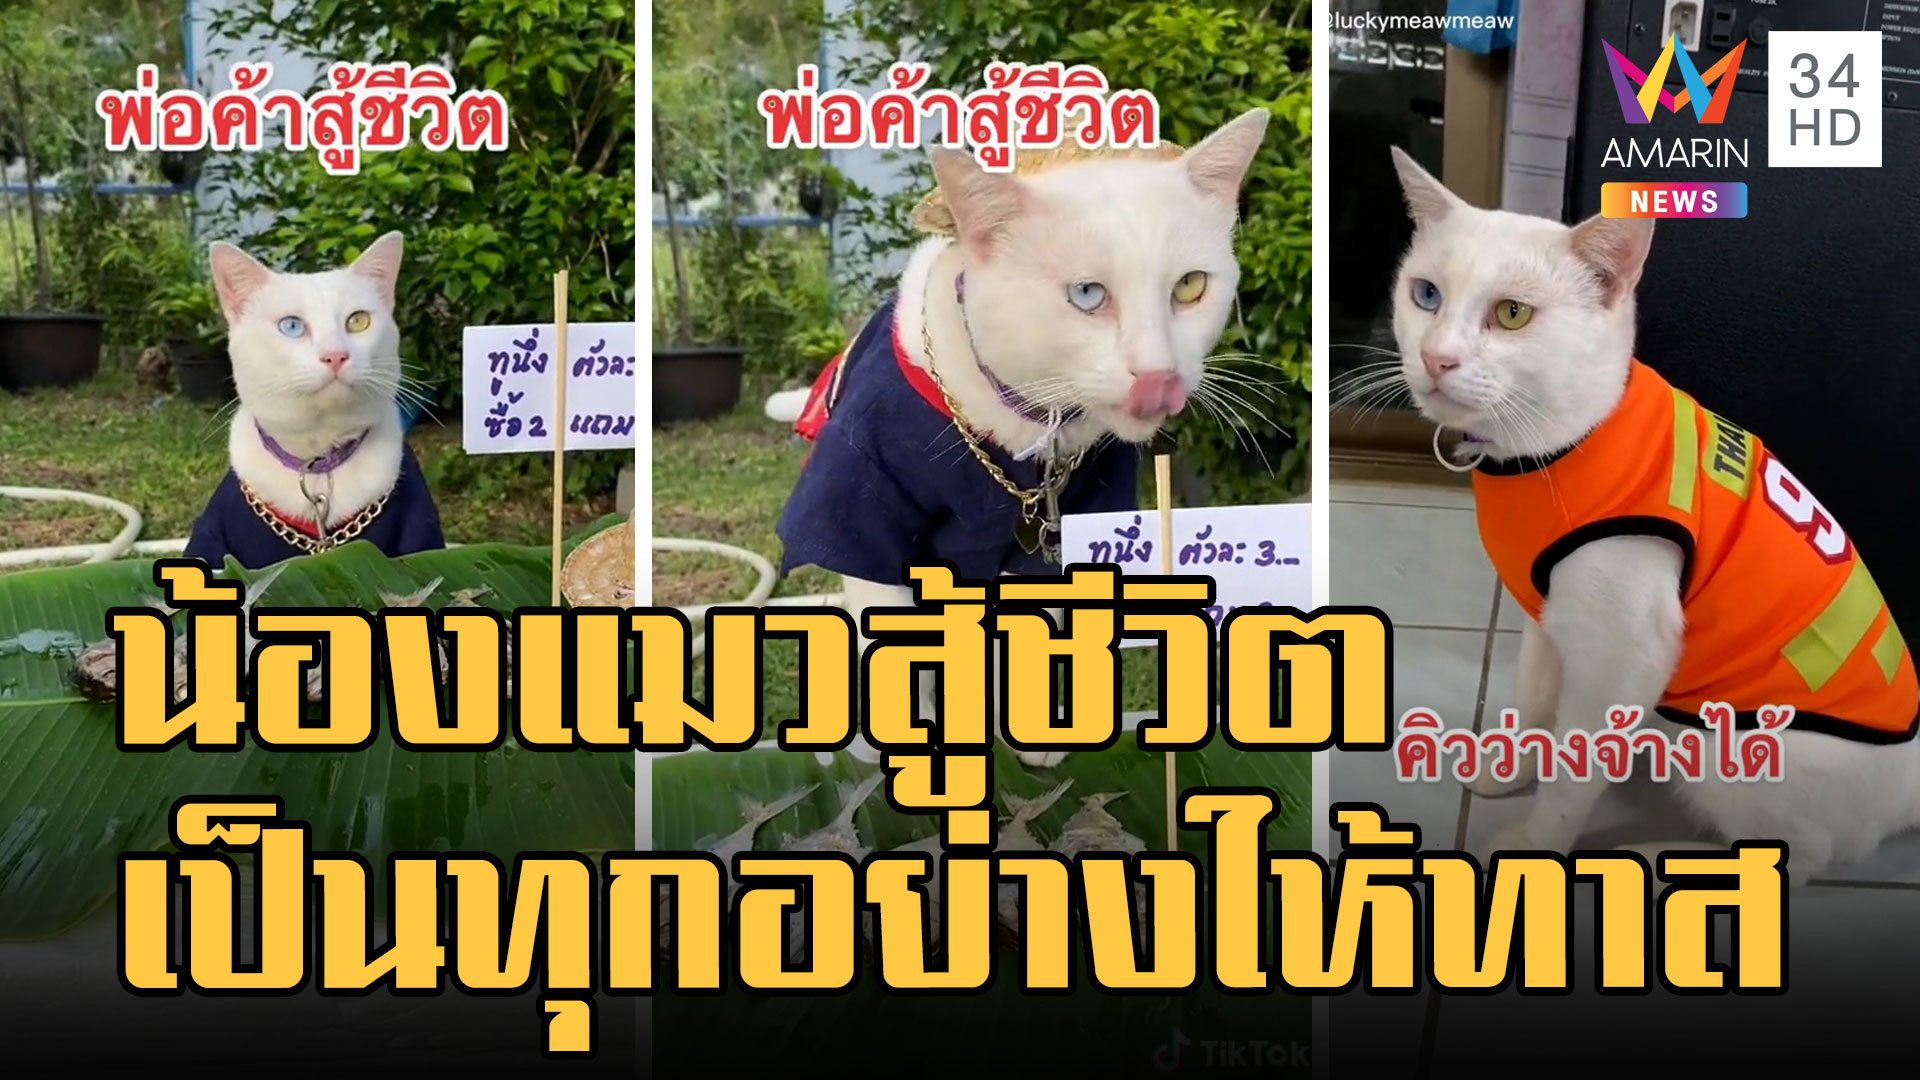 น้องแมวพ่อค้าสู้ชีวิต ขายปลาทูนึ่ง สะกดจิตตัวเองไม่ให้กิน | ข่าวอรุณอมรินทร์ | 3 ต.ค. 65 | AMARIN TVHD34